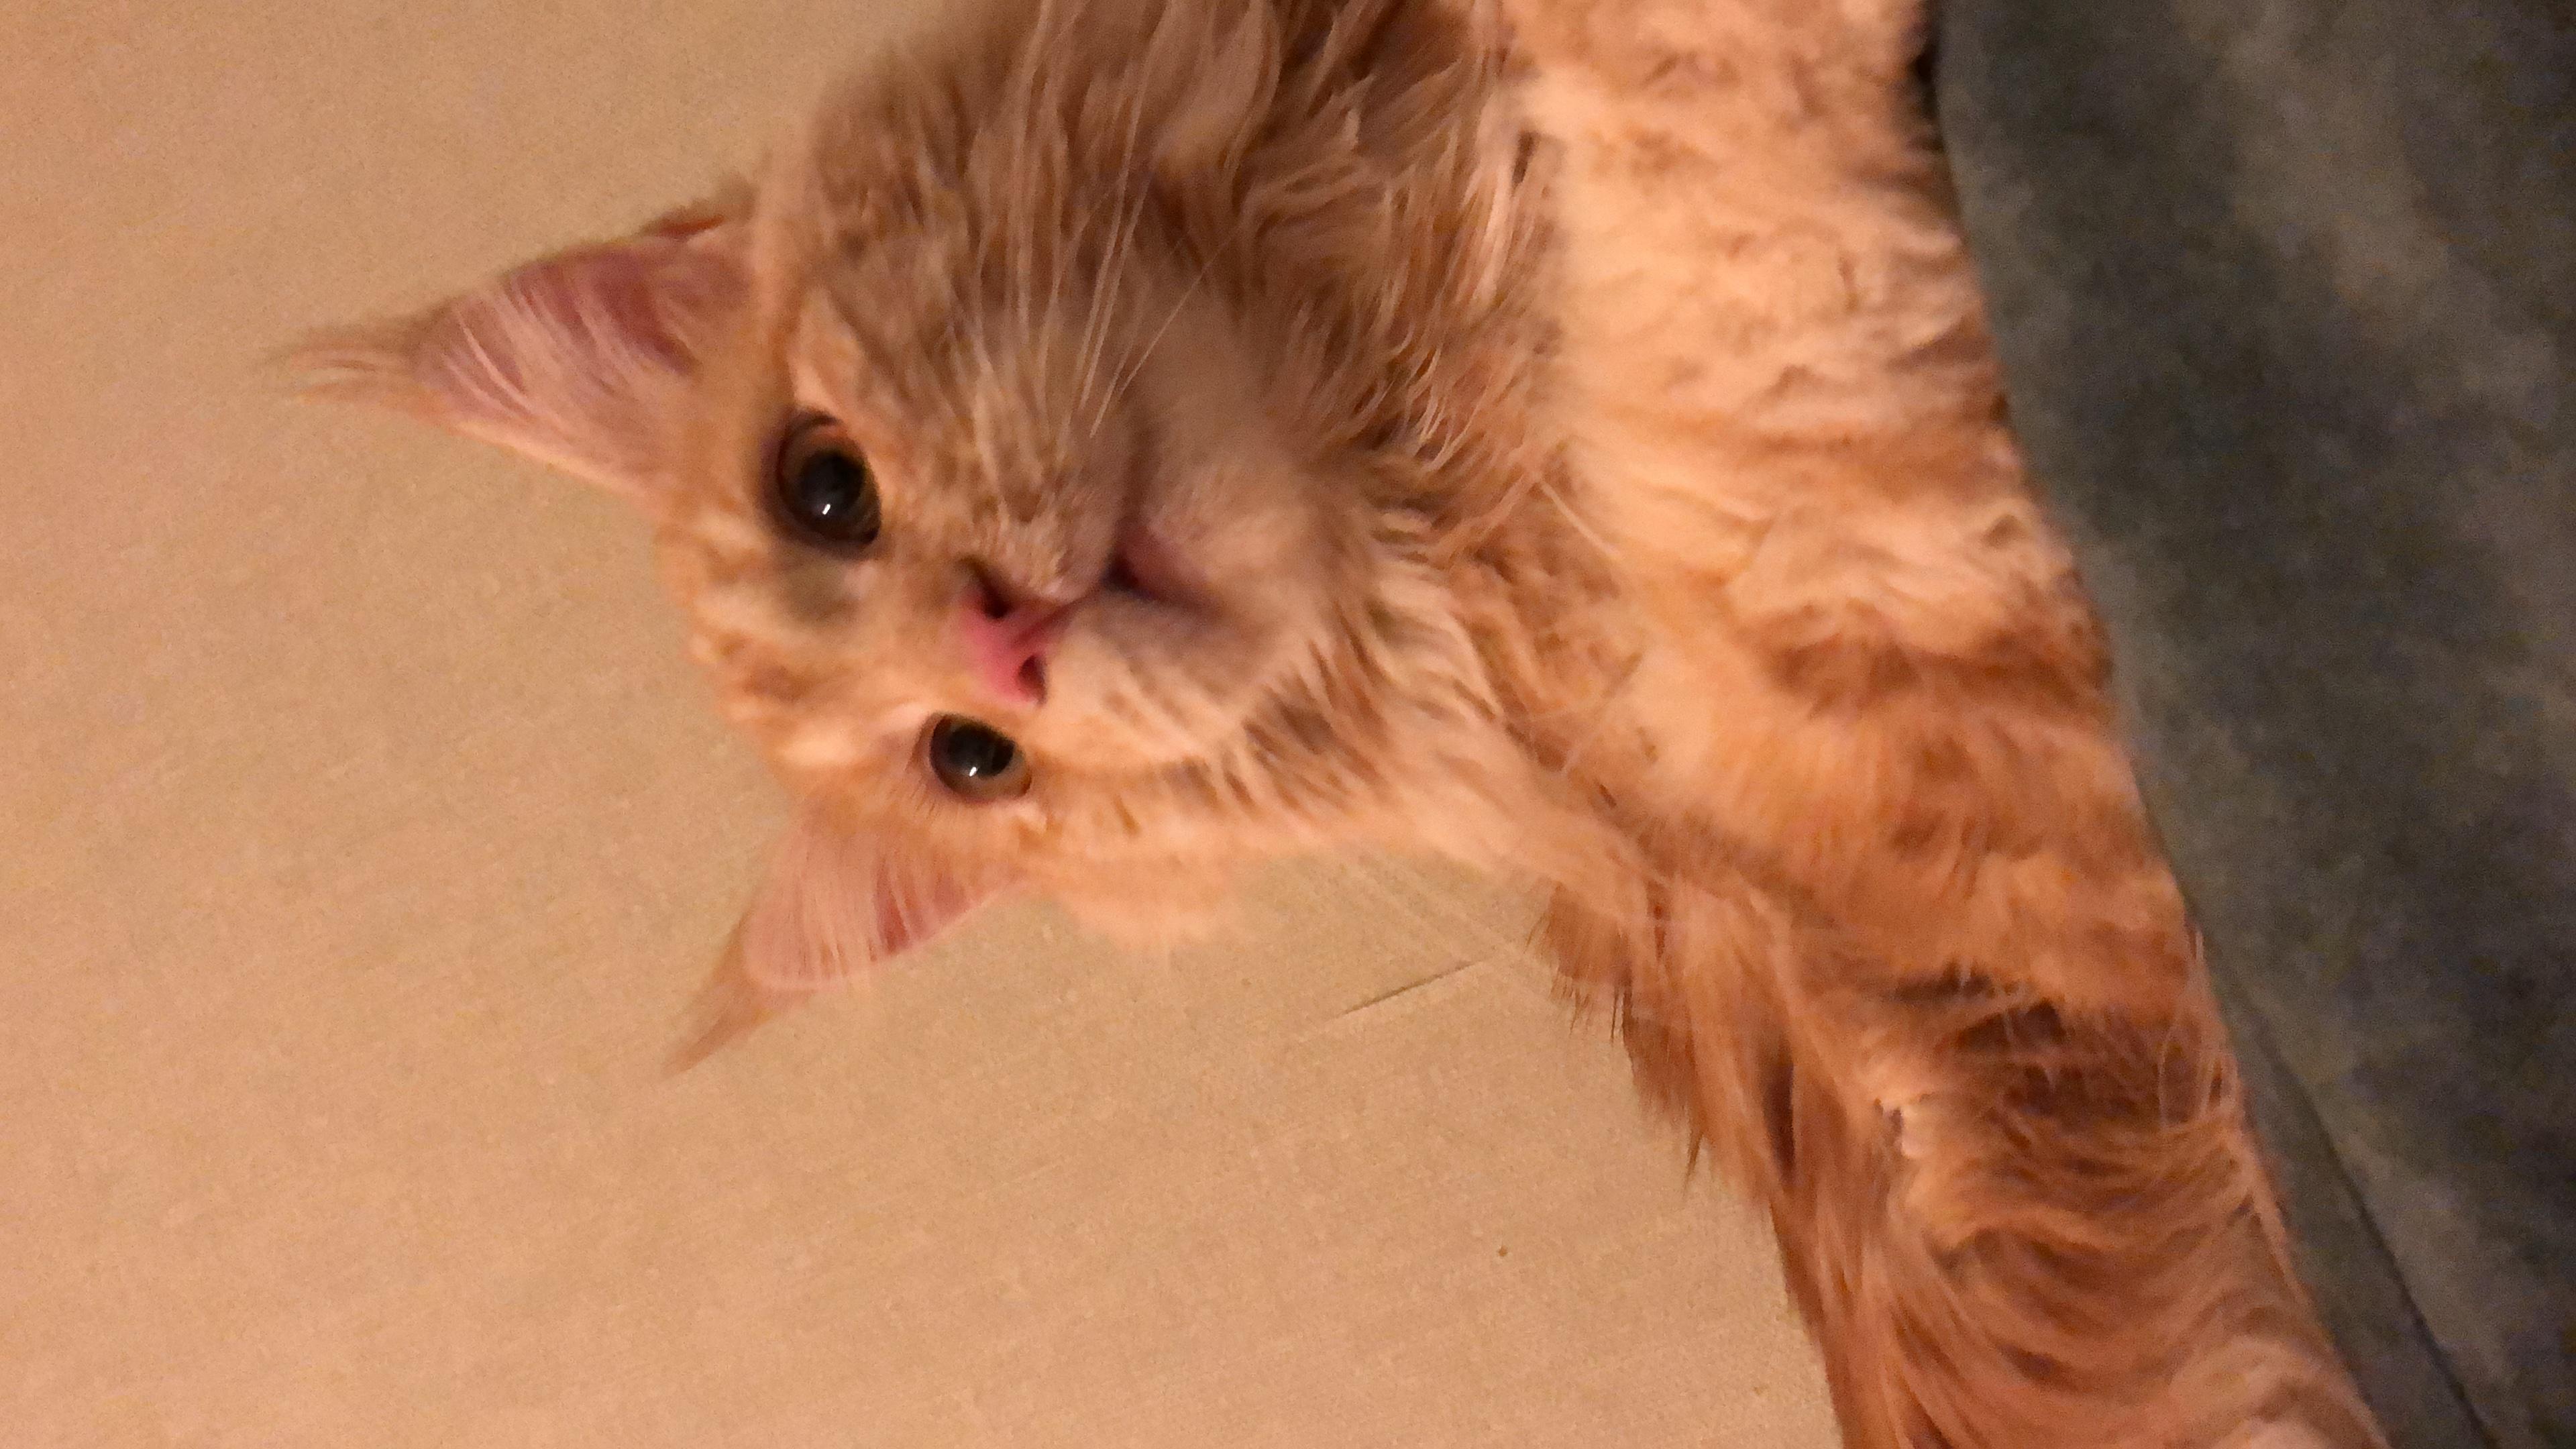 Постоянно заложен нос у кота, бесплатная консультация ветеринара - вопрос  задан пользователем Алла Слободенюк про питомца: кошка Мейн-кун